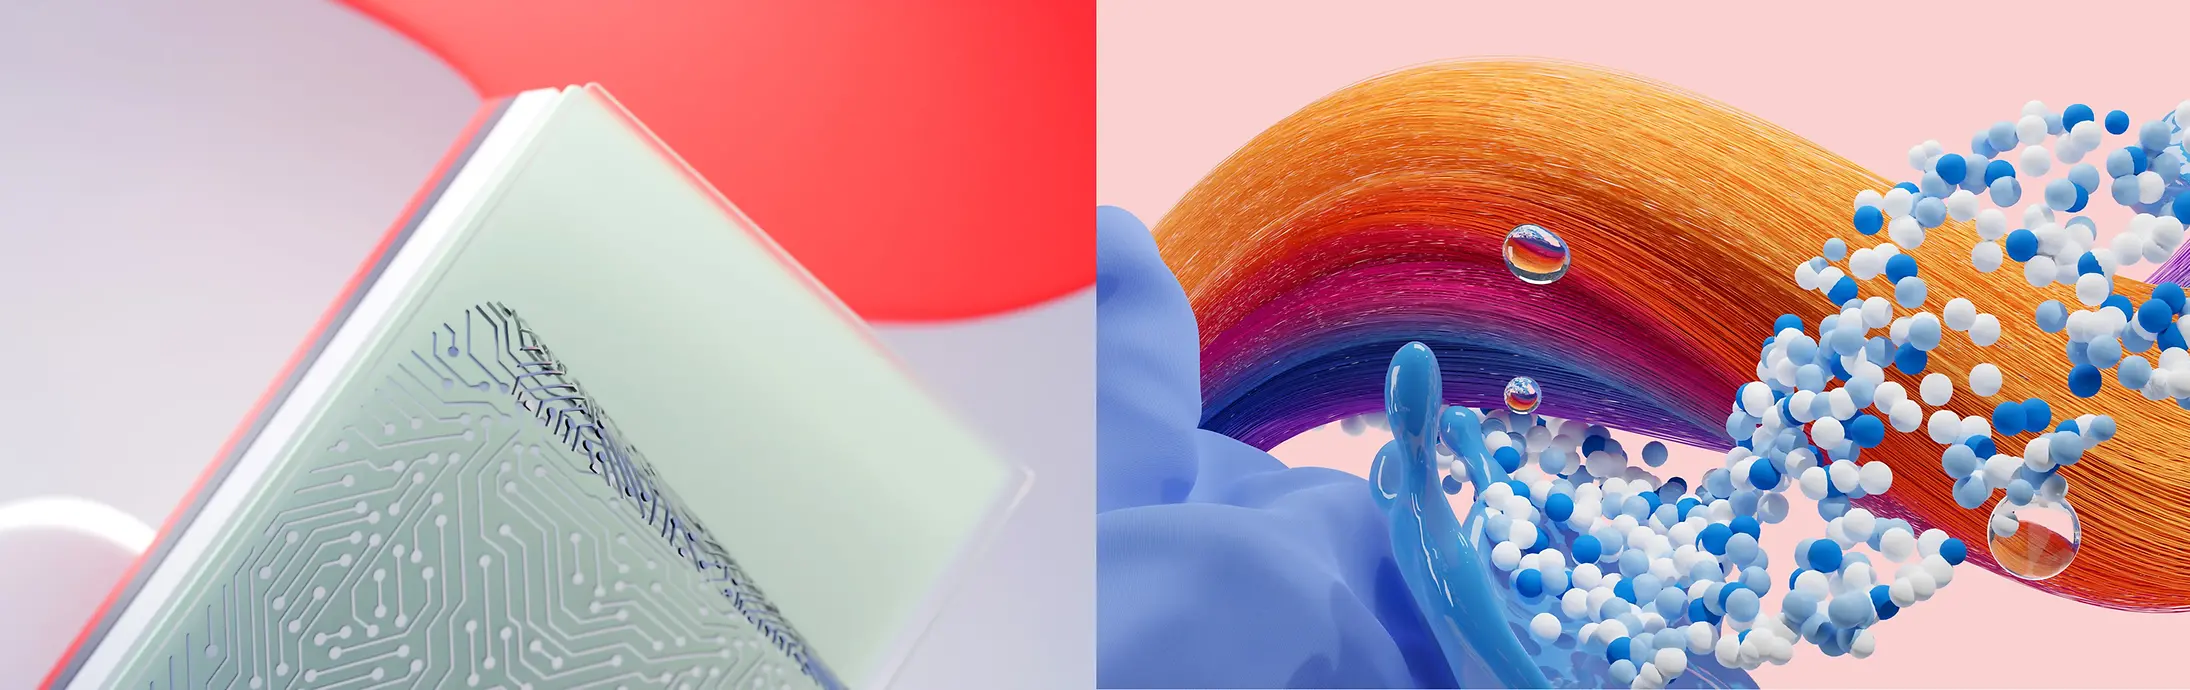 Apstraktna slika koja prikazuje Henkelove poslovne jedinice Adhesive Technologies, Hair i Laundry & Home Care.